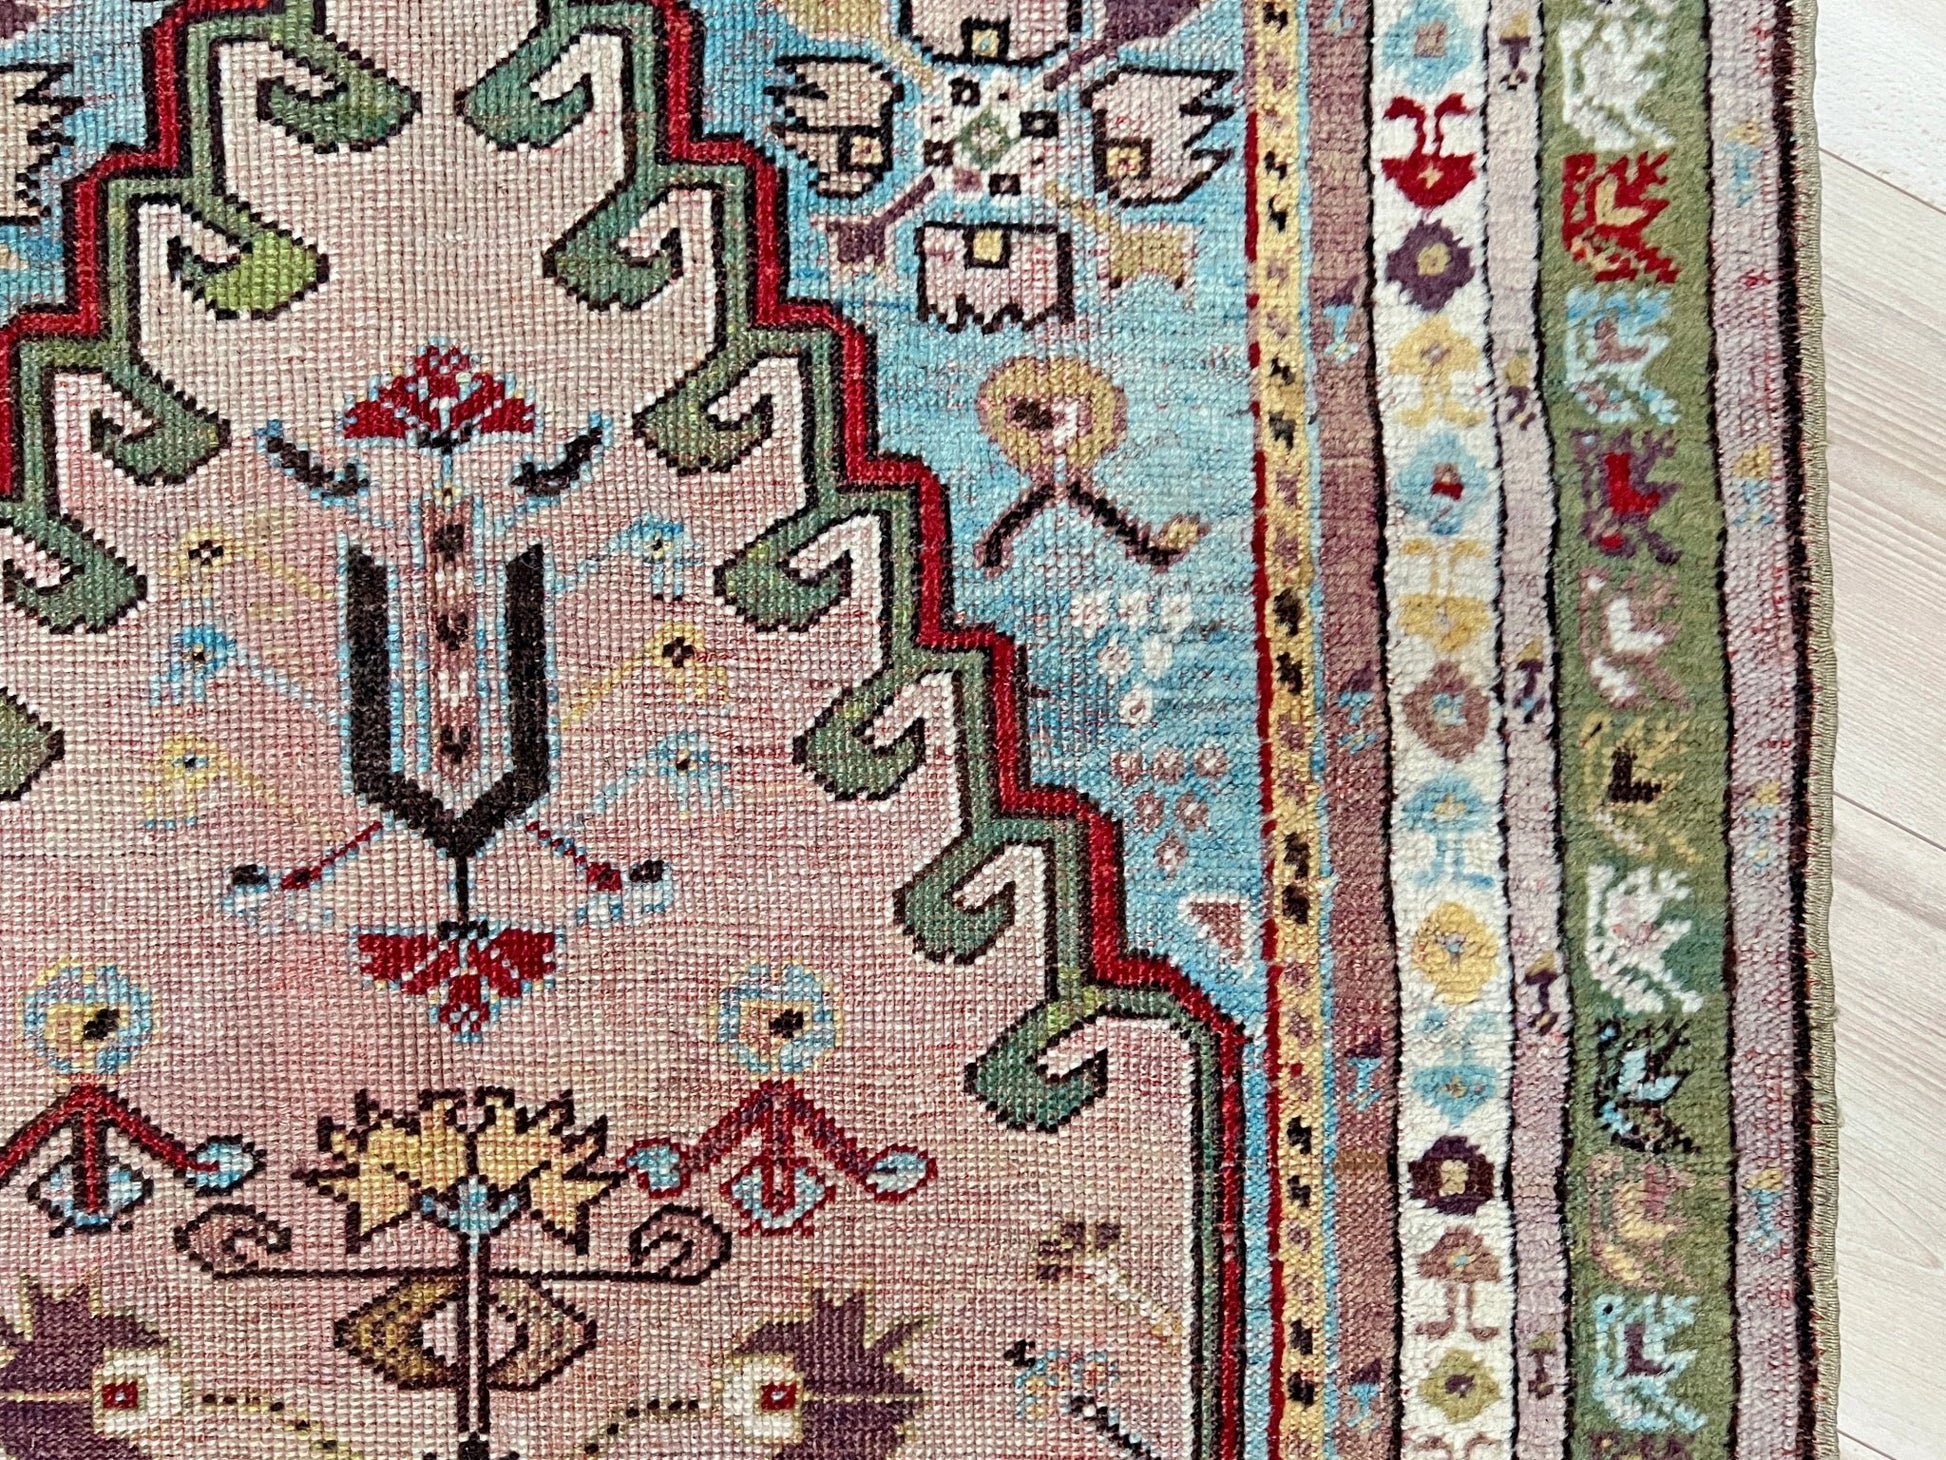 Kirsehir antique turkish prayer rug shop san francisco bay area. Wall hanging rug. Oriental rug shop. Buy handmade wool rug